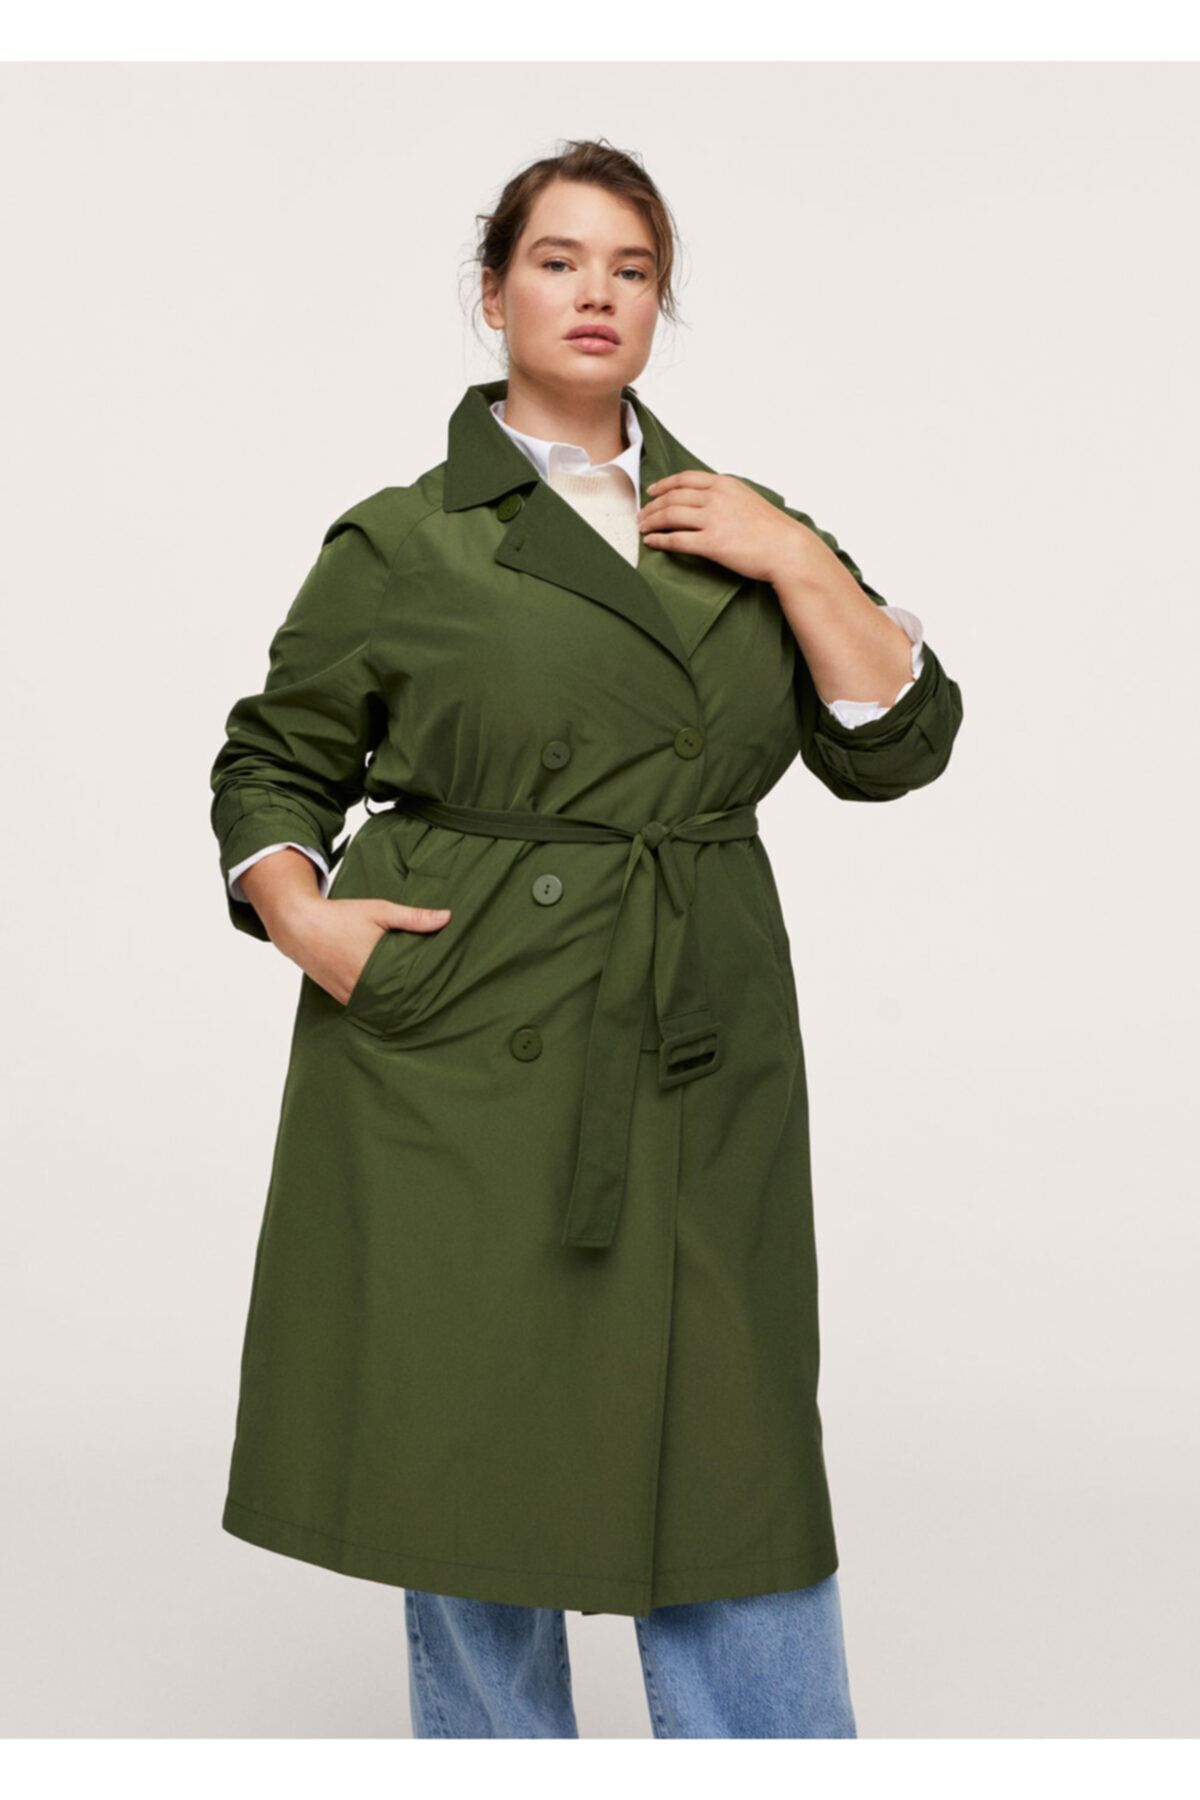 ترنچ کت منگو زنانه مدل کلاسیک رنگ سبز سایز بزرگ شیک Mango